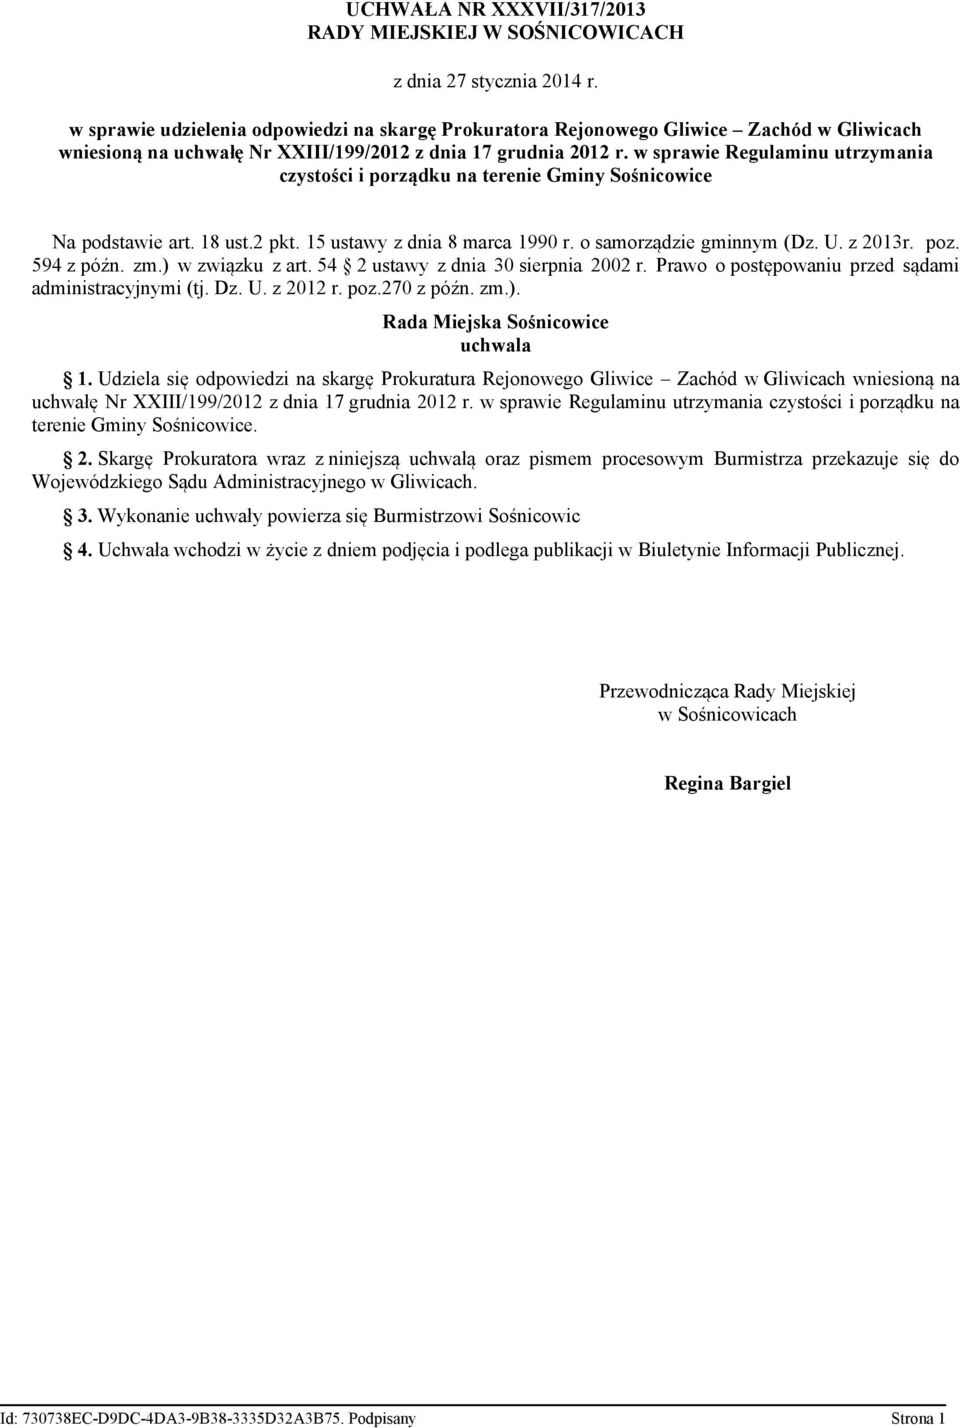 w sprawie Regulaminu utrzymania czystości i porządku na terenie Gminy Sośnicowice Na podstawie art. 18 ust.2 pkt. 15 ustawy z dnia 8 marca 1990 r. o samorządzie gminnym (Dz. U. z 2013r. poz.